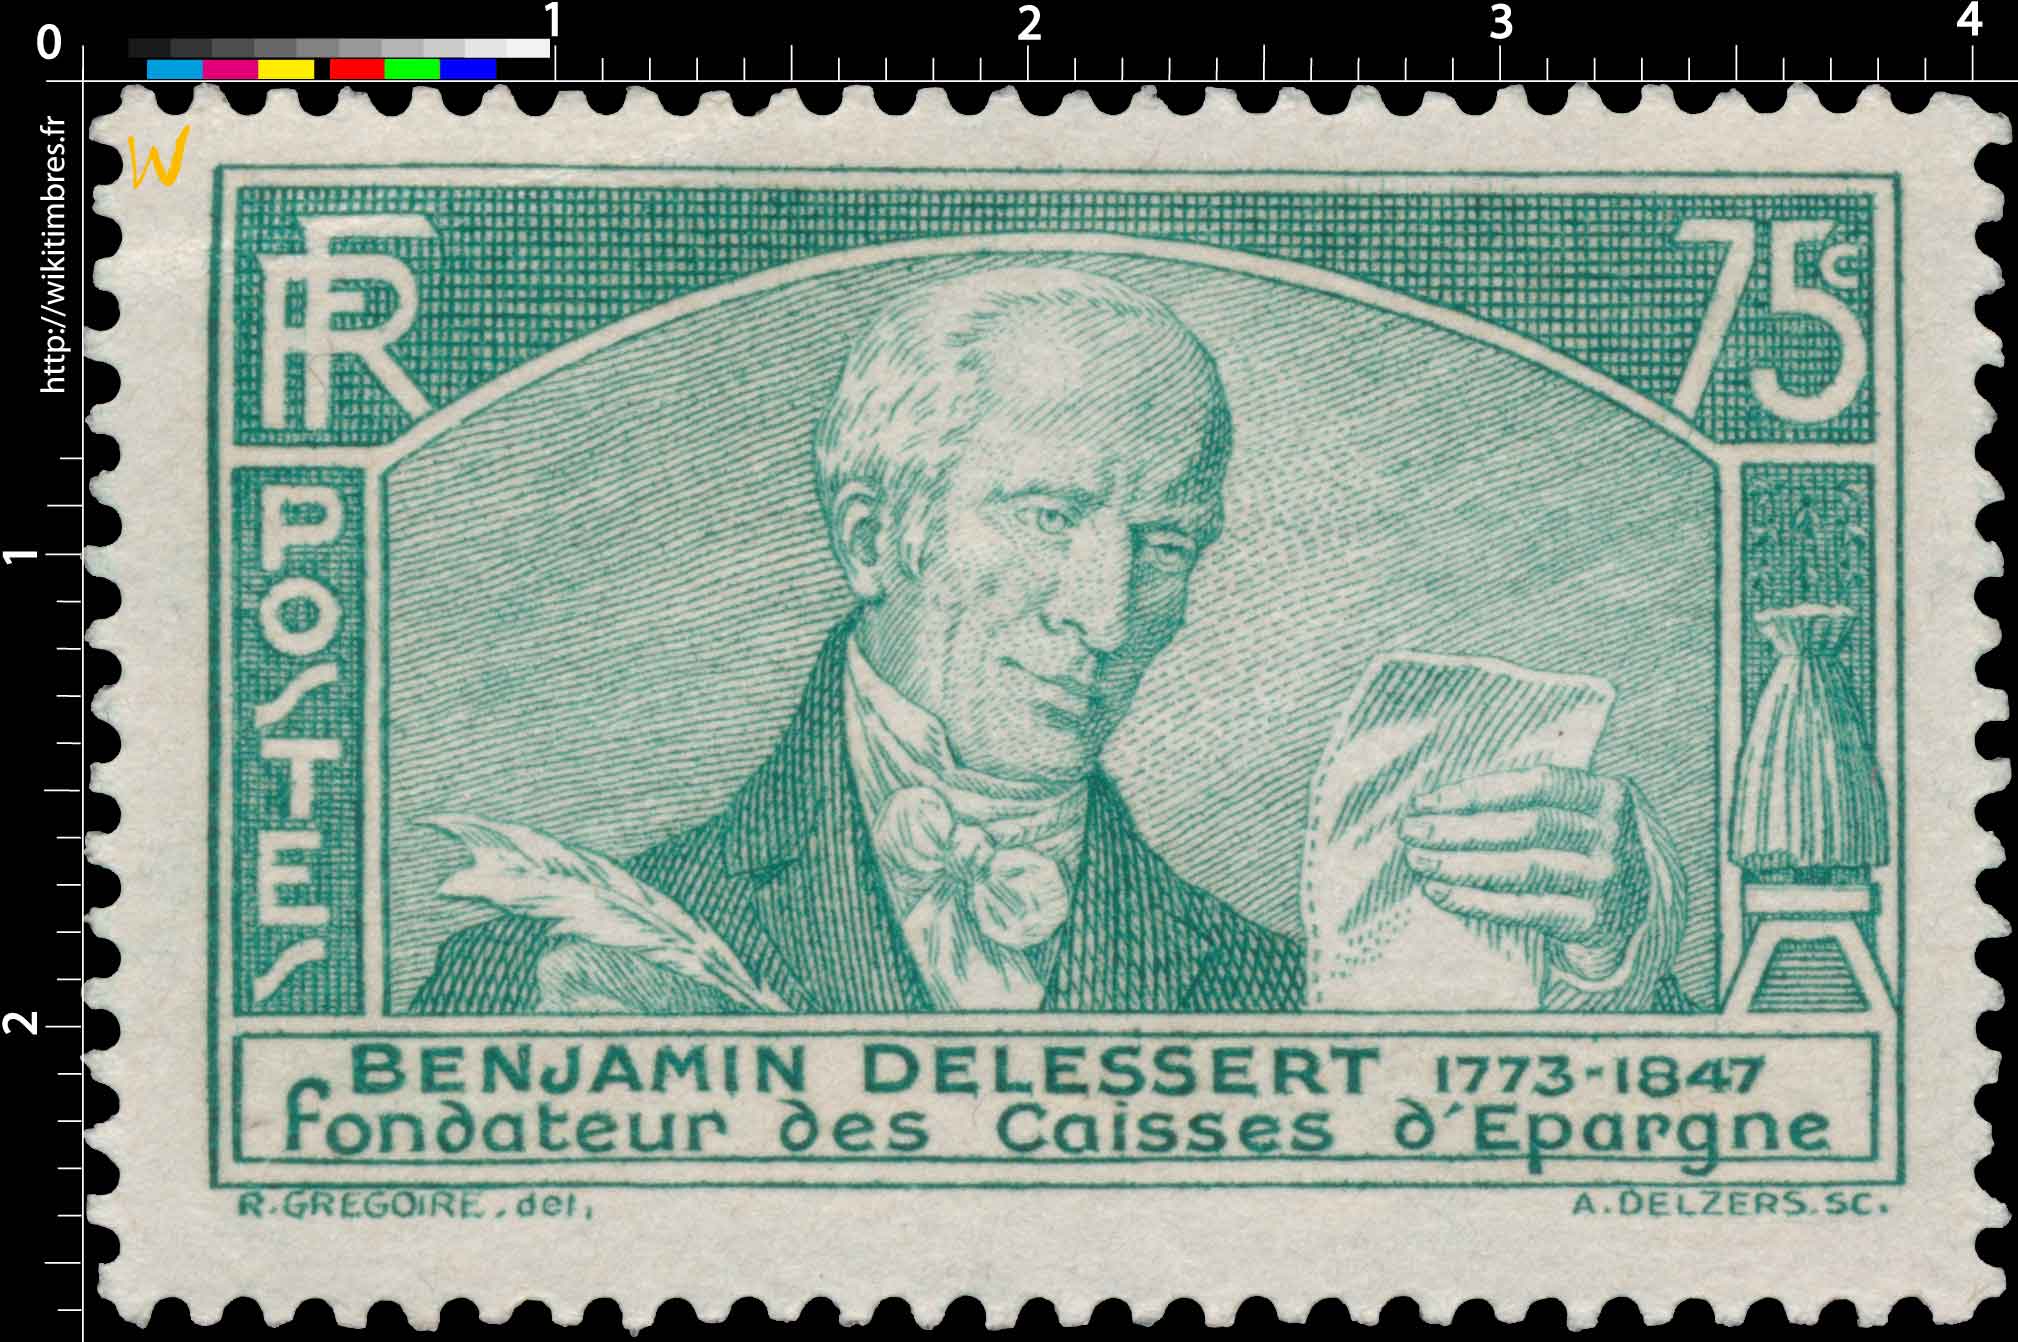 BENJAMIN DELESSERT 1773-1847 fondateur des Caisses d'Épargne